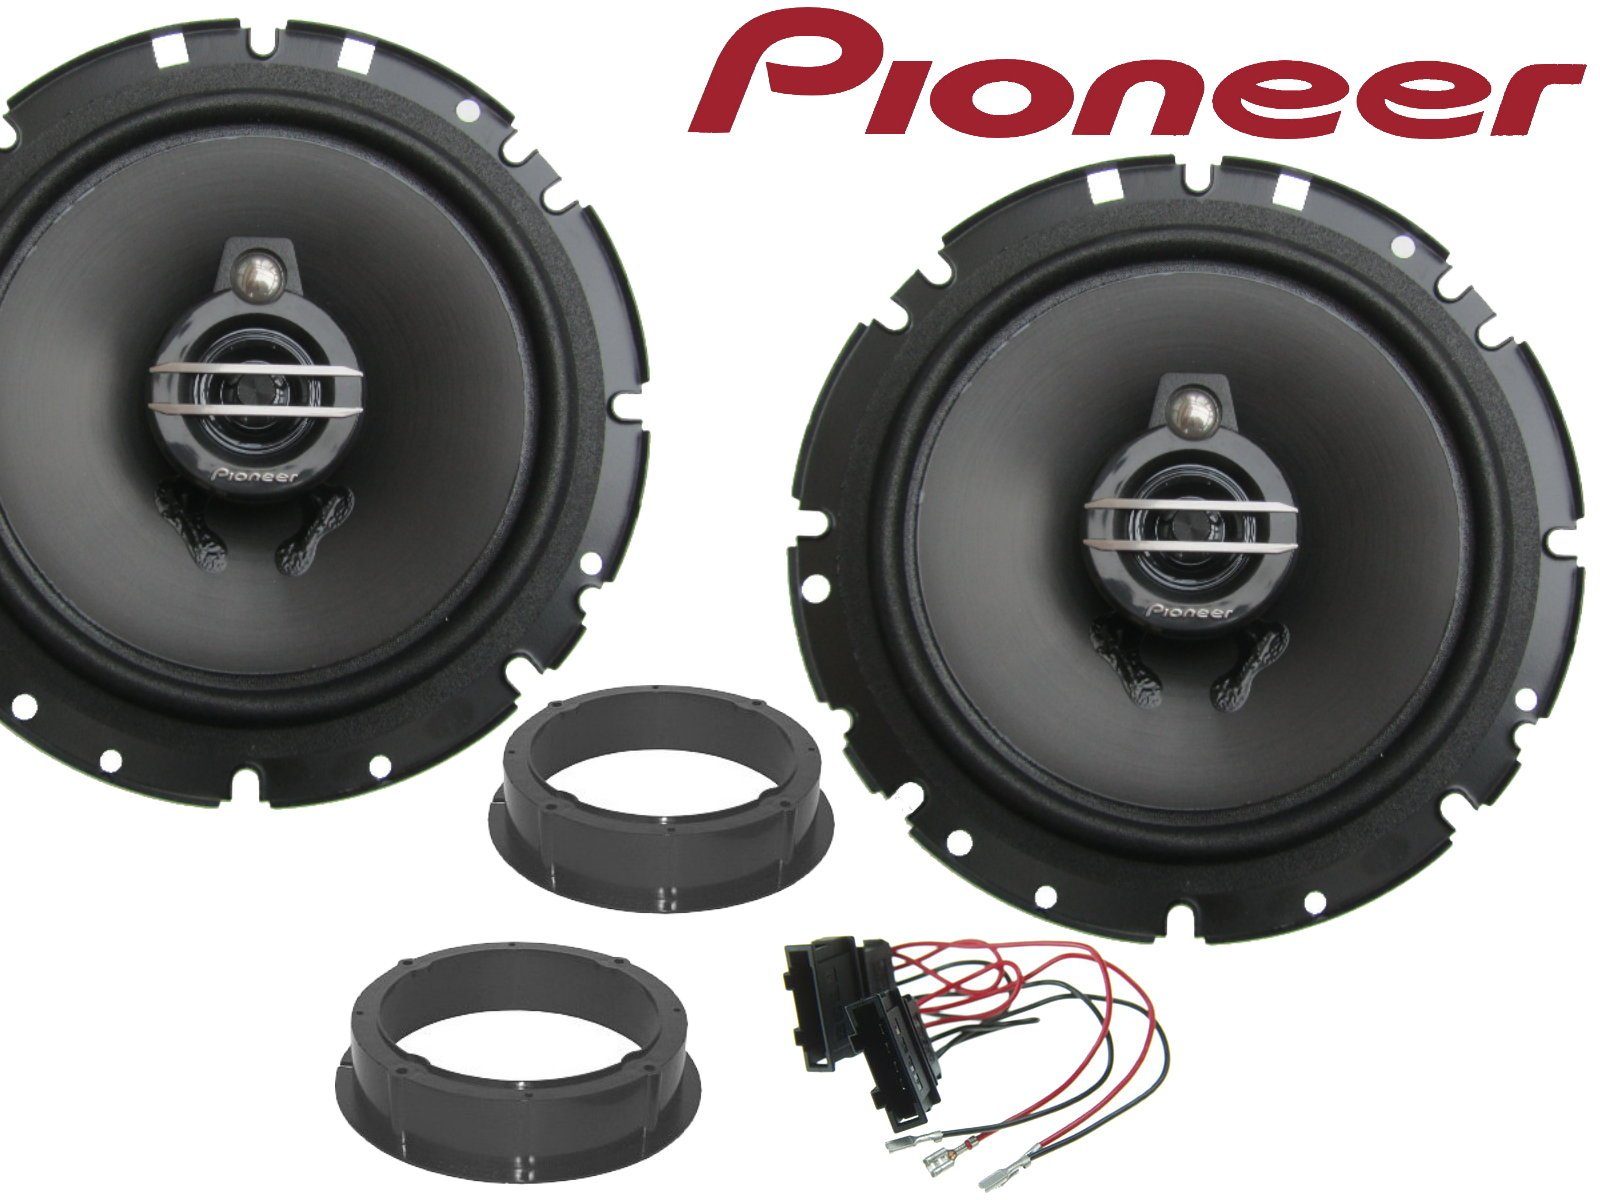 DSX Pioneer 3wege passend für VW Passat B6 B7 B8 ab 20 Auto-Lautsprecher (40 W)